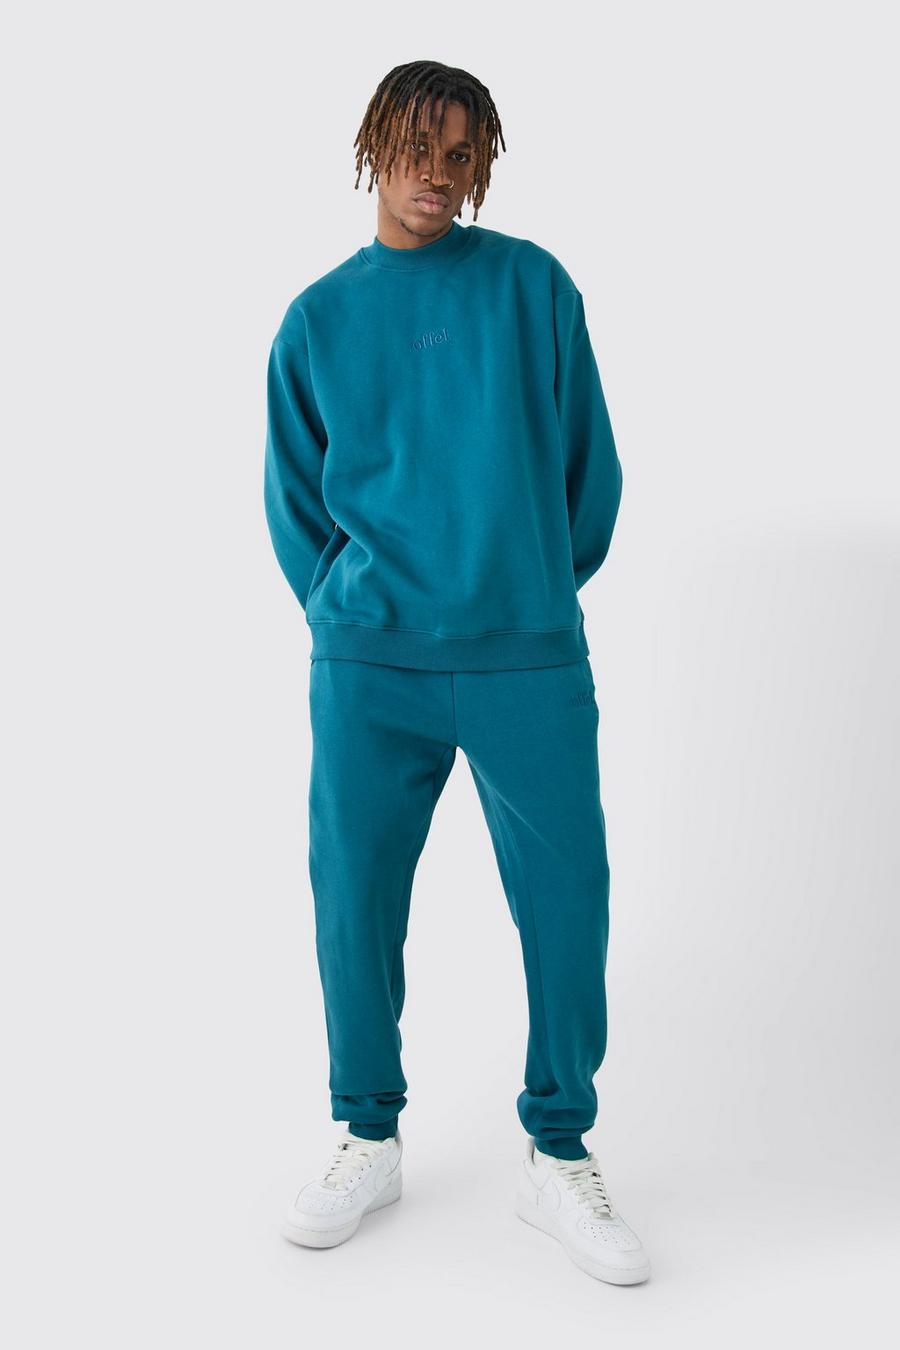 Dark blue Tall Offcl Oversize träningsoverall med sweatshirt och hög halsmudd